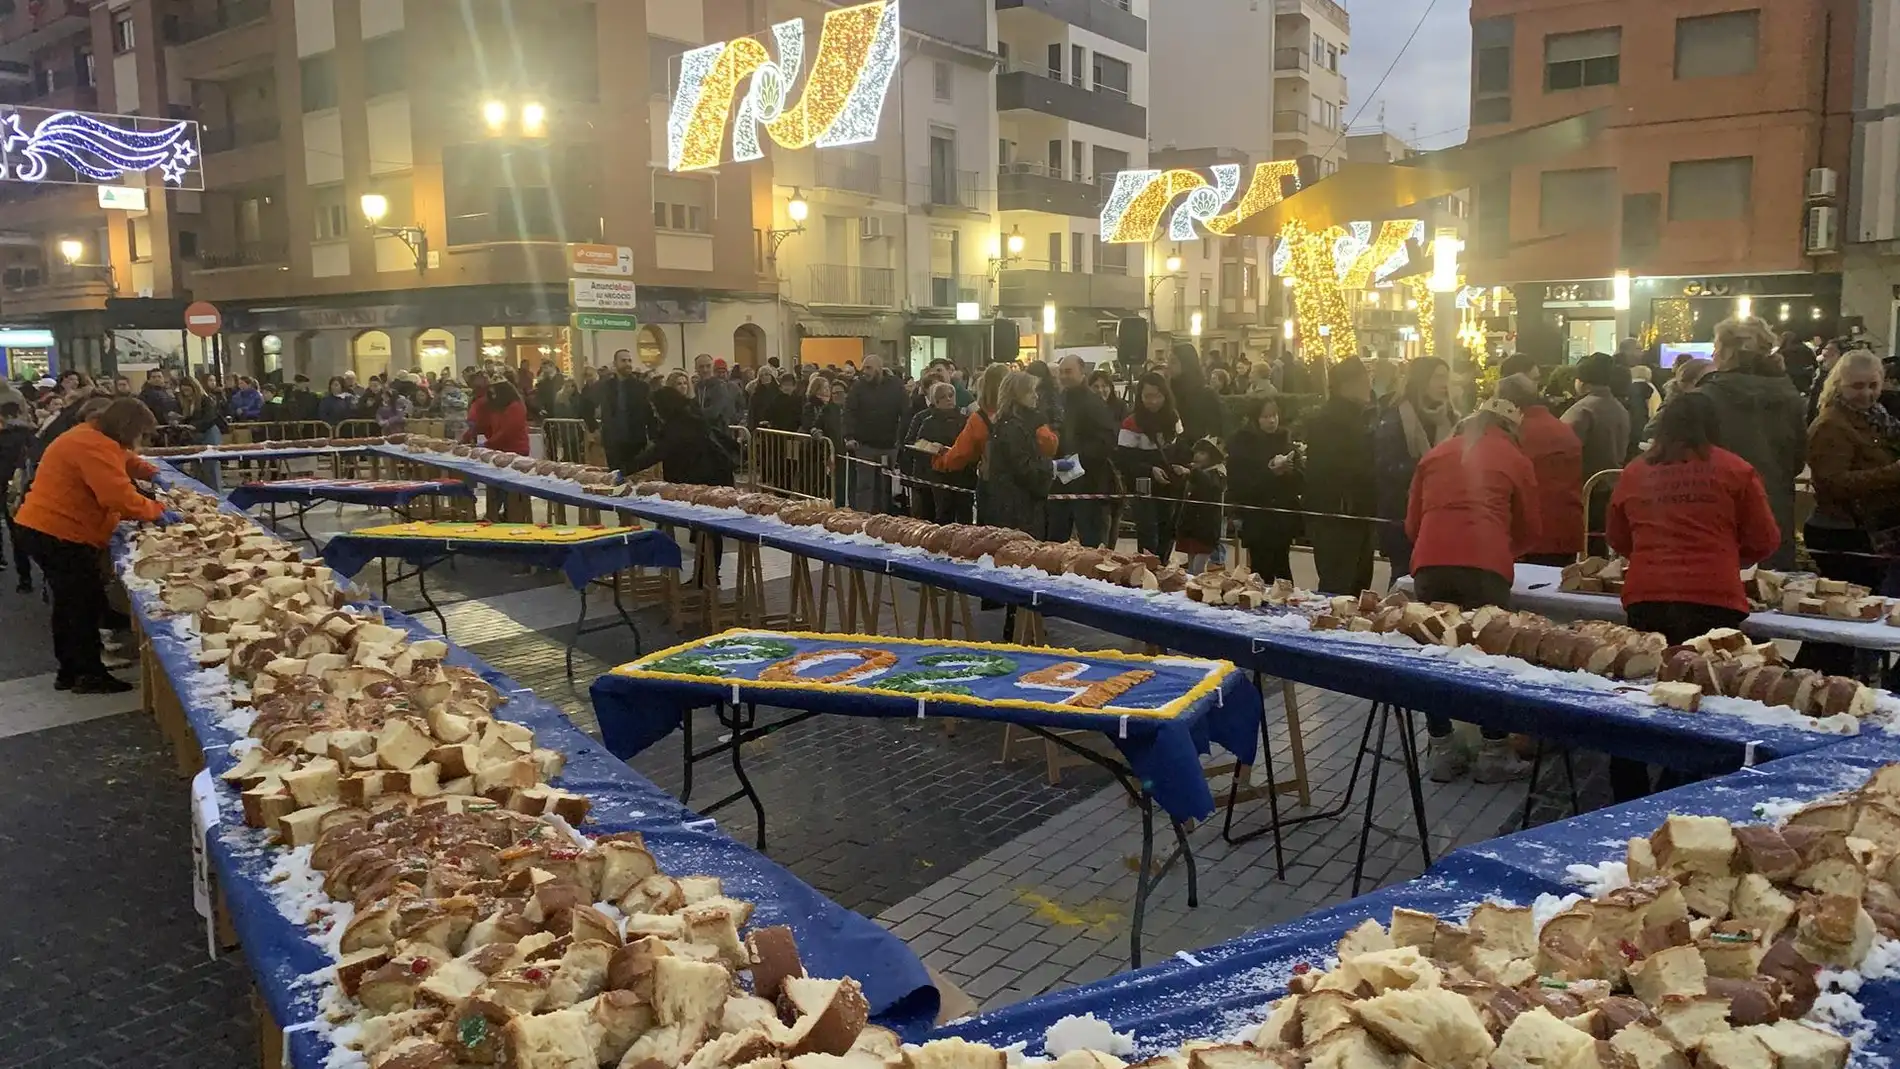 Más de 2.000 personas meriendan "a lo grande" el roscón de Reyes gigante que bate récords en Utiel